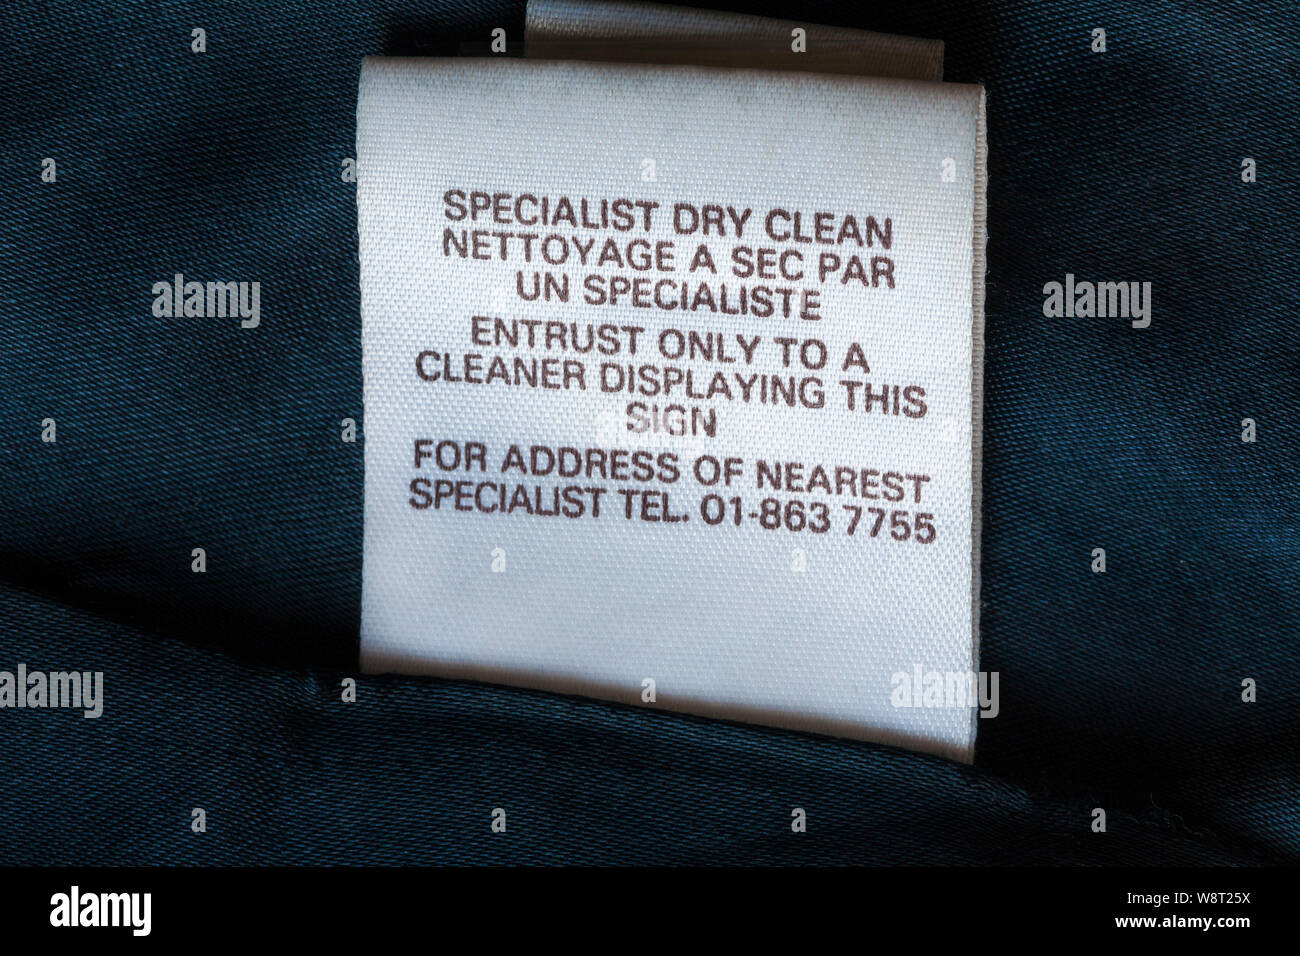 Nettoyage à sec spécialiste de confier uniquement à l'assainissement de l'affichage de ce panneau de détails sur étiquette en cuir veste Banque D'Images